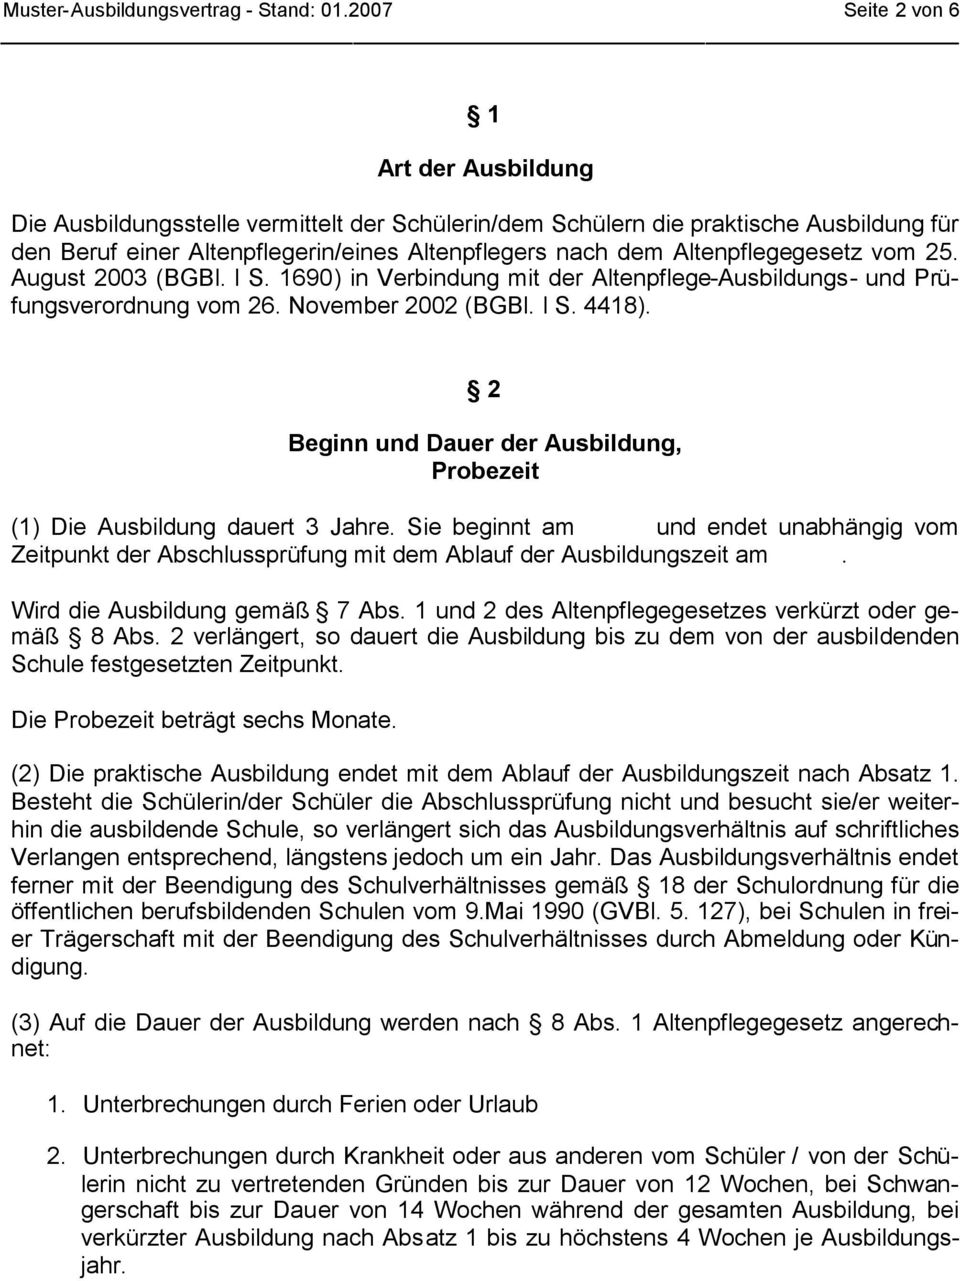 Altenpflegegesetz vom 25. August 2003 (BGBl. l S. 1690) in Verbindung mit der Altenpflege-Ausbildungs- und Prüfungsverordnung vom 26. November 2002 (BGBl. l S. 4418).